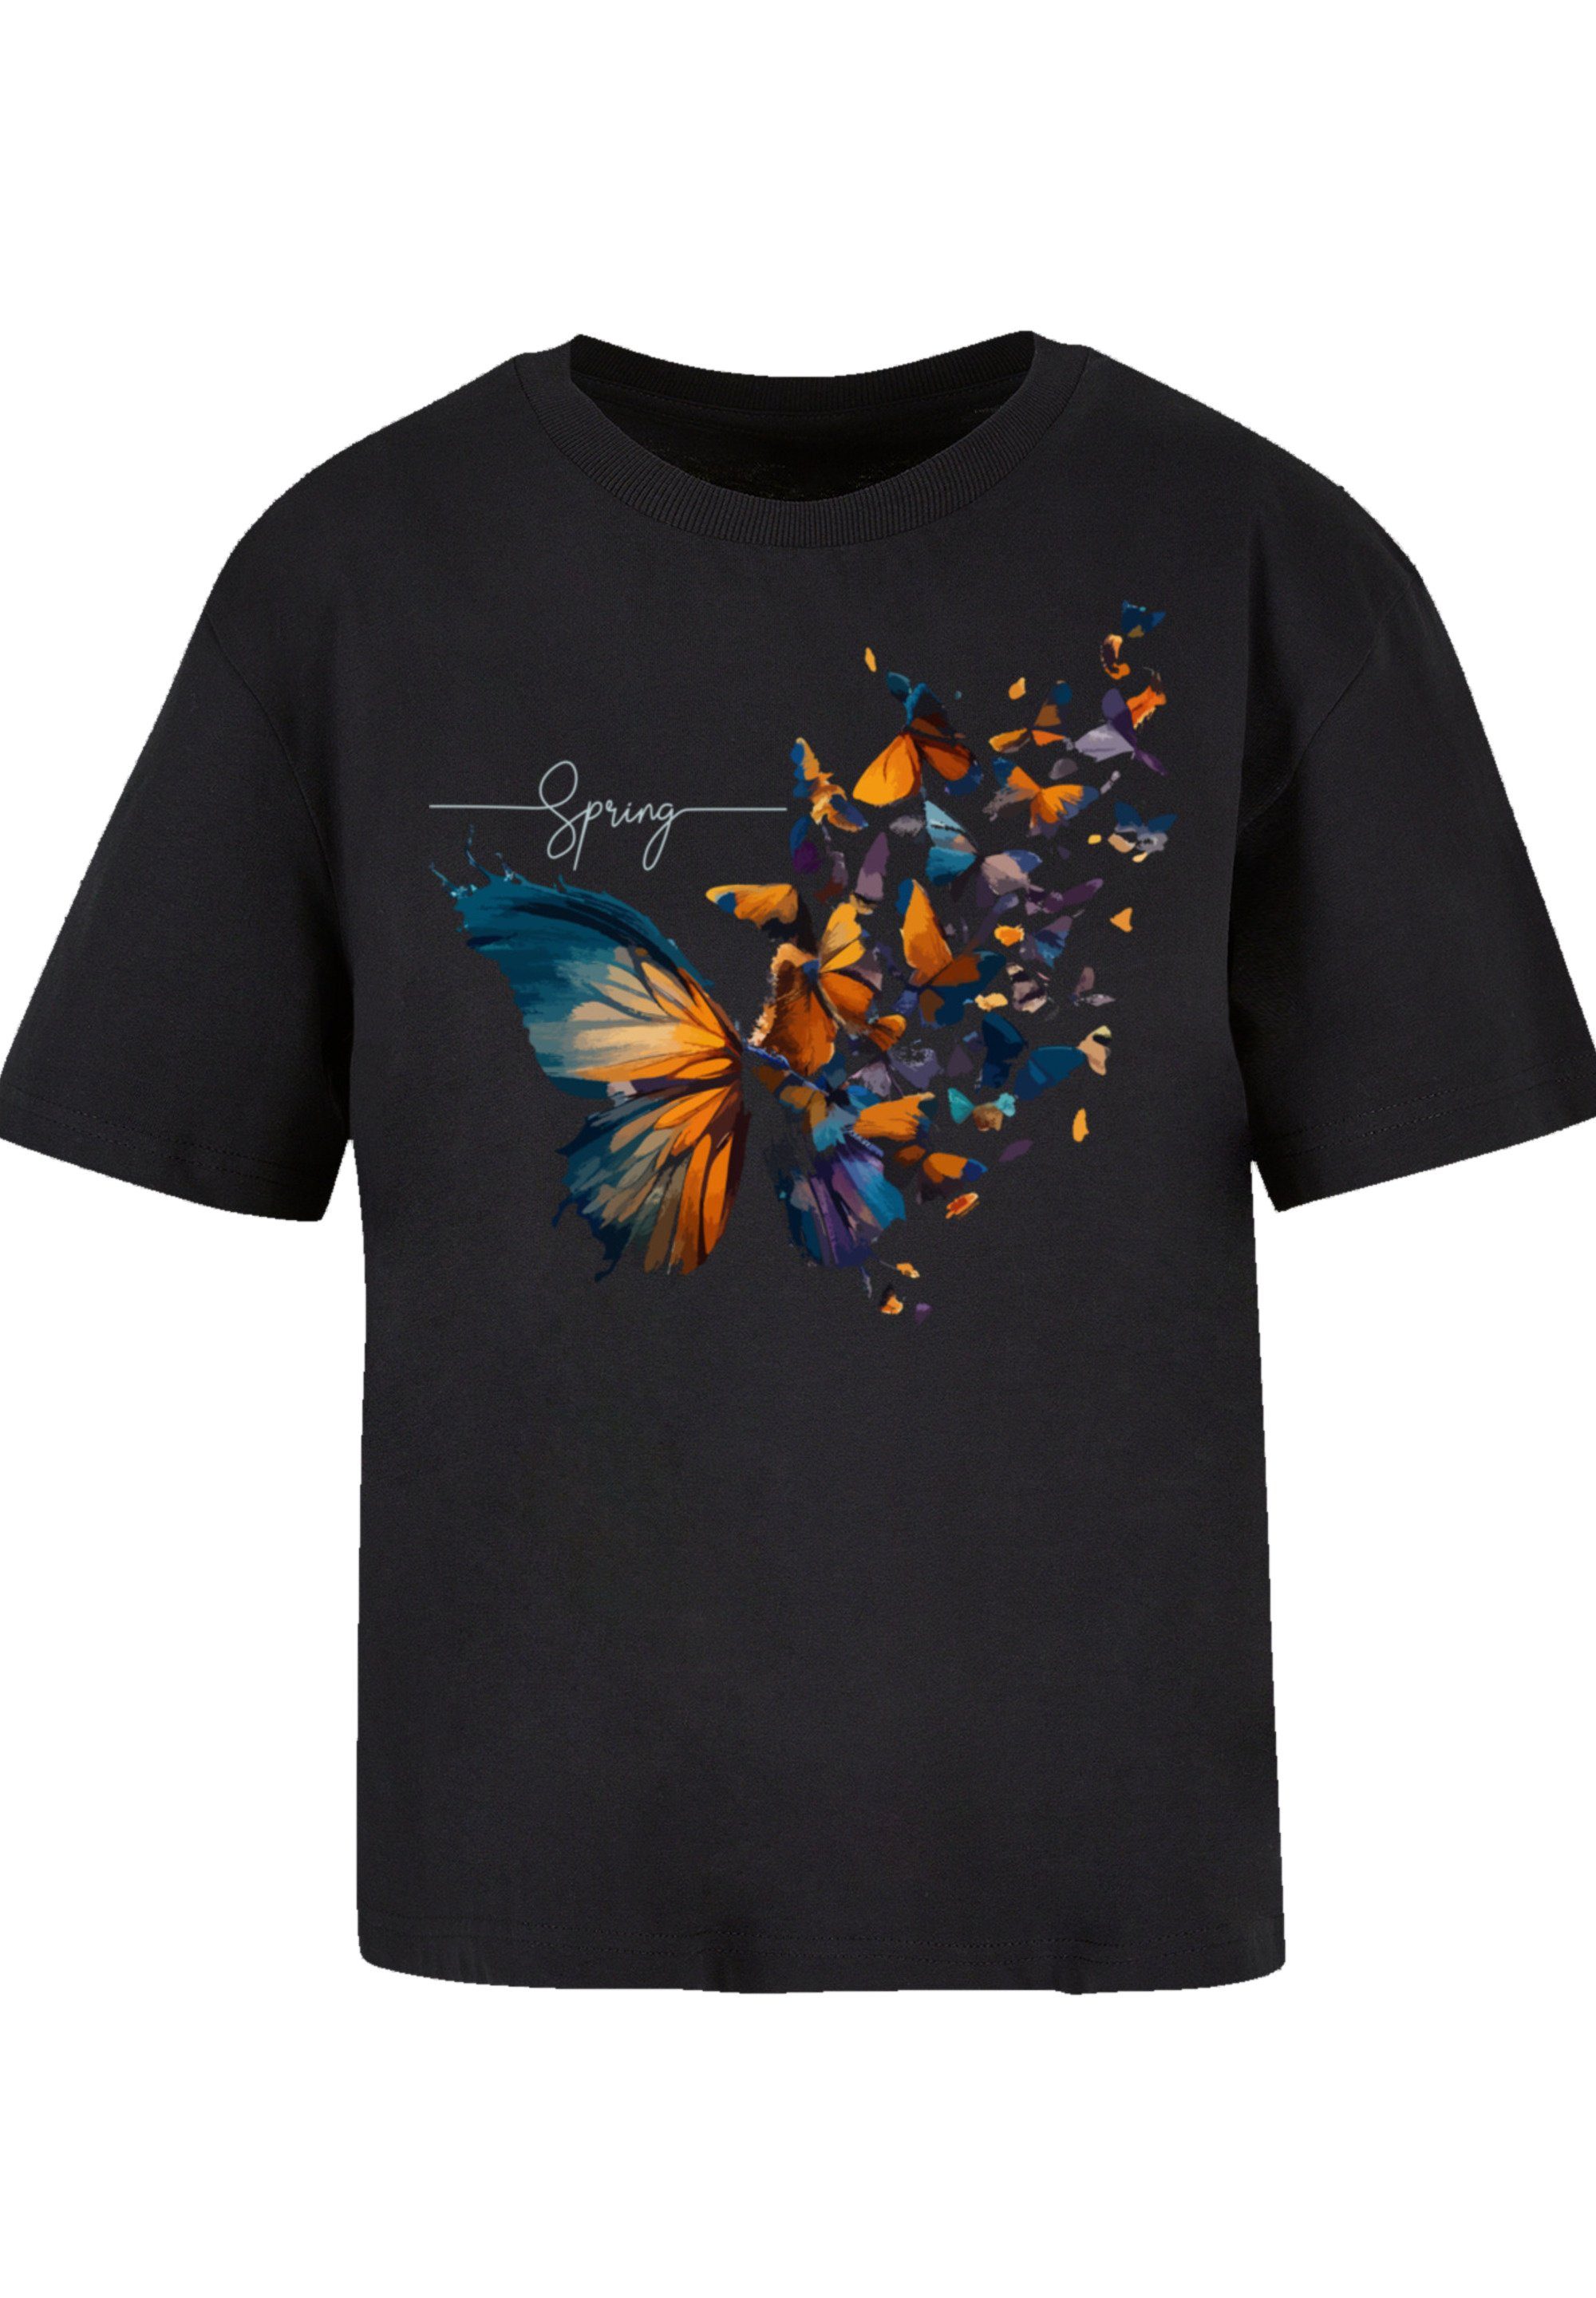 F4NT4STIC T-Shirt Schmetterling Print, Fällt aus, bitte kleiner bestellen eine weit Größe